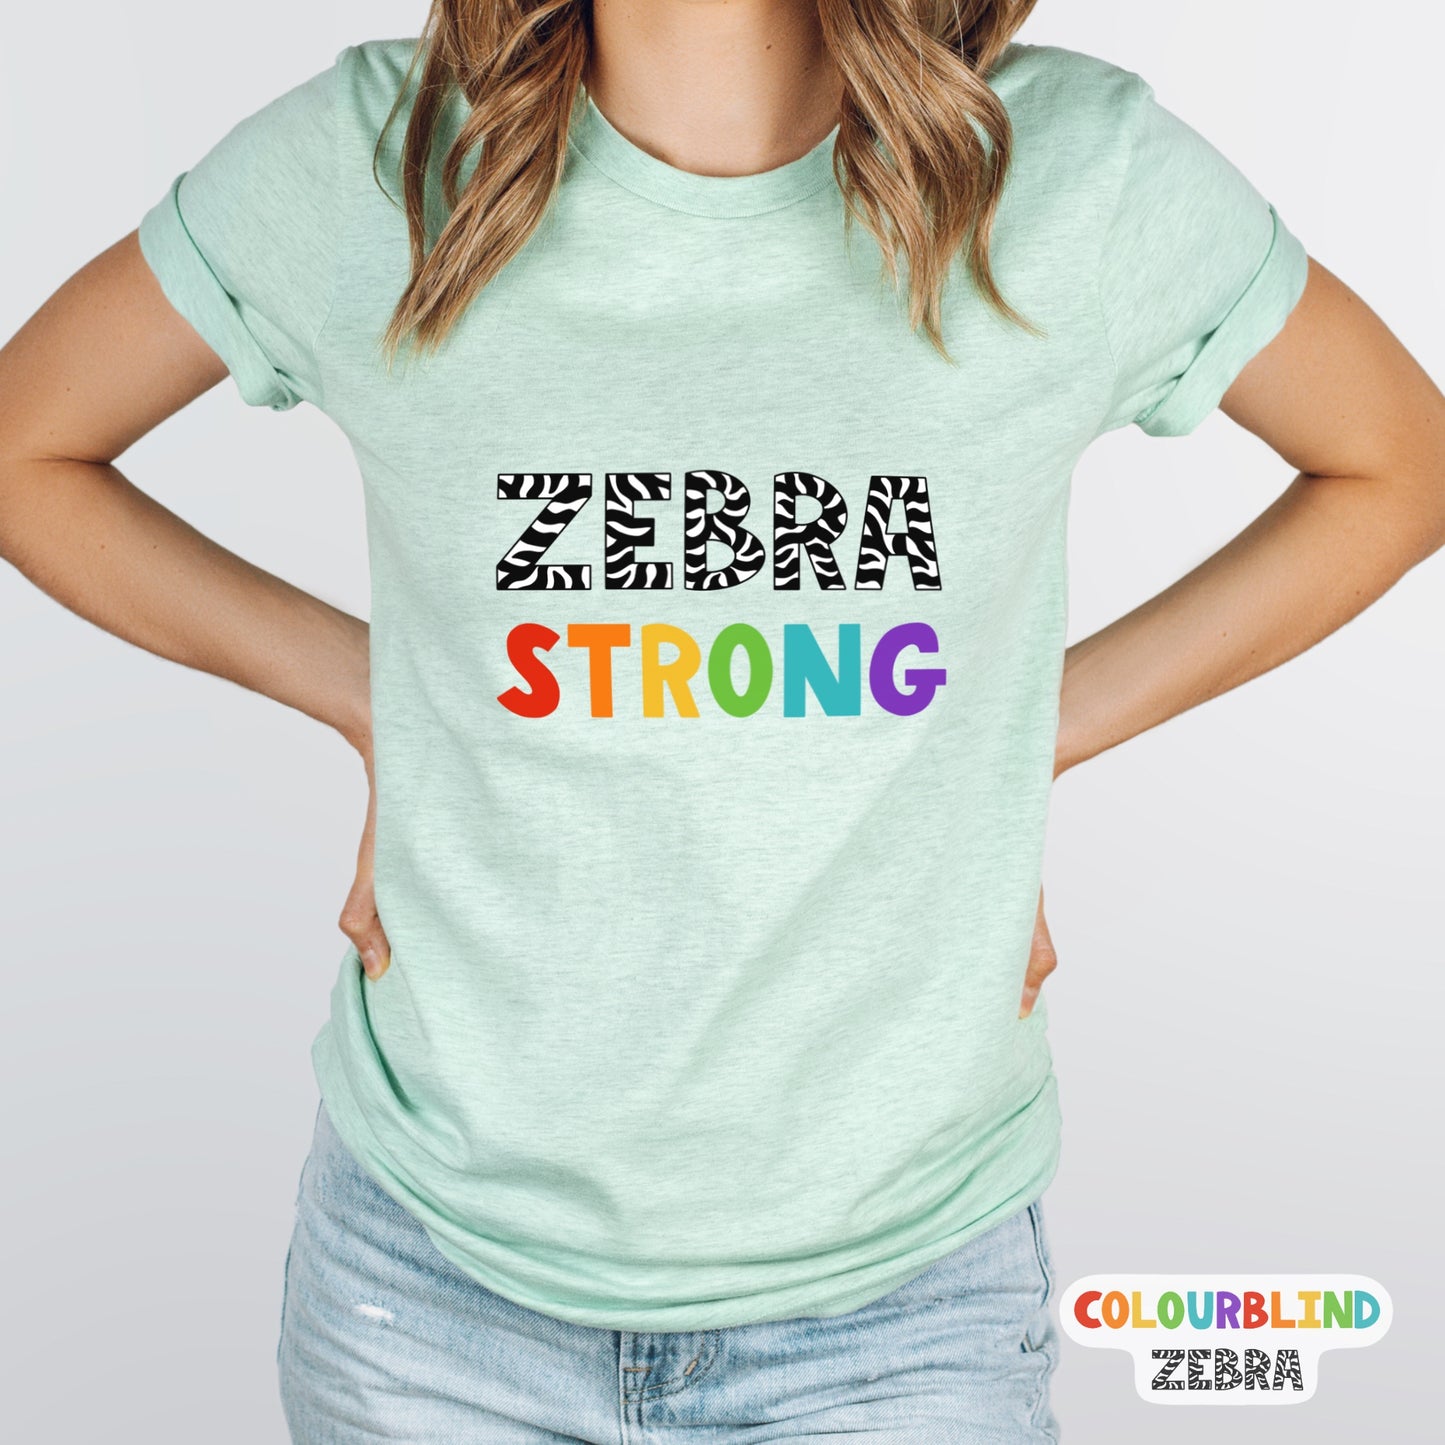 Zebra Strong T-Shirt